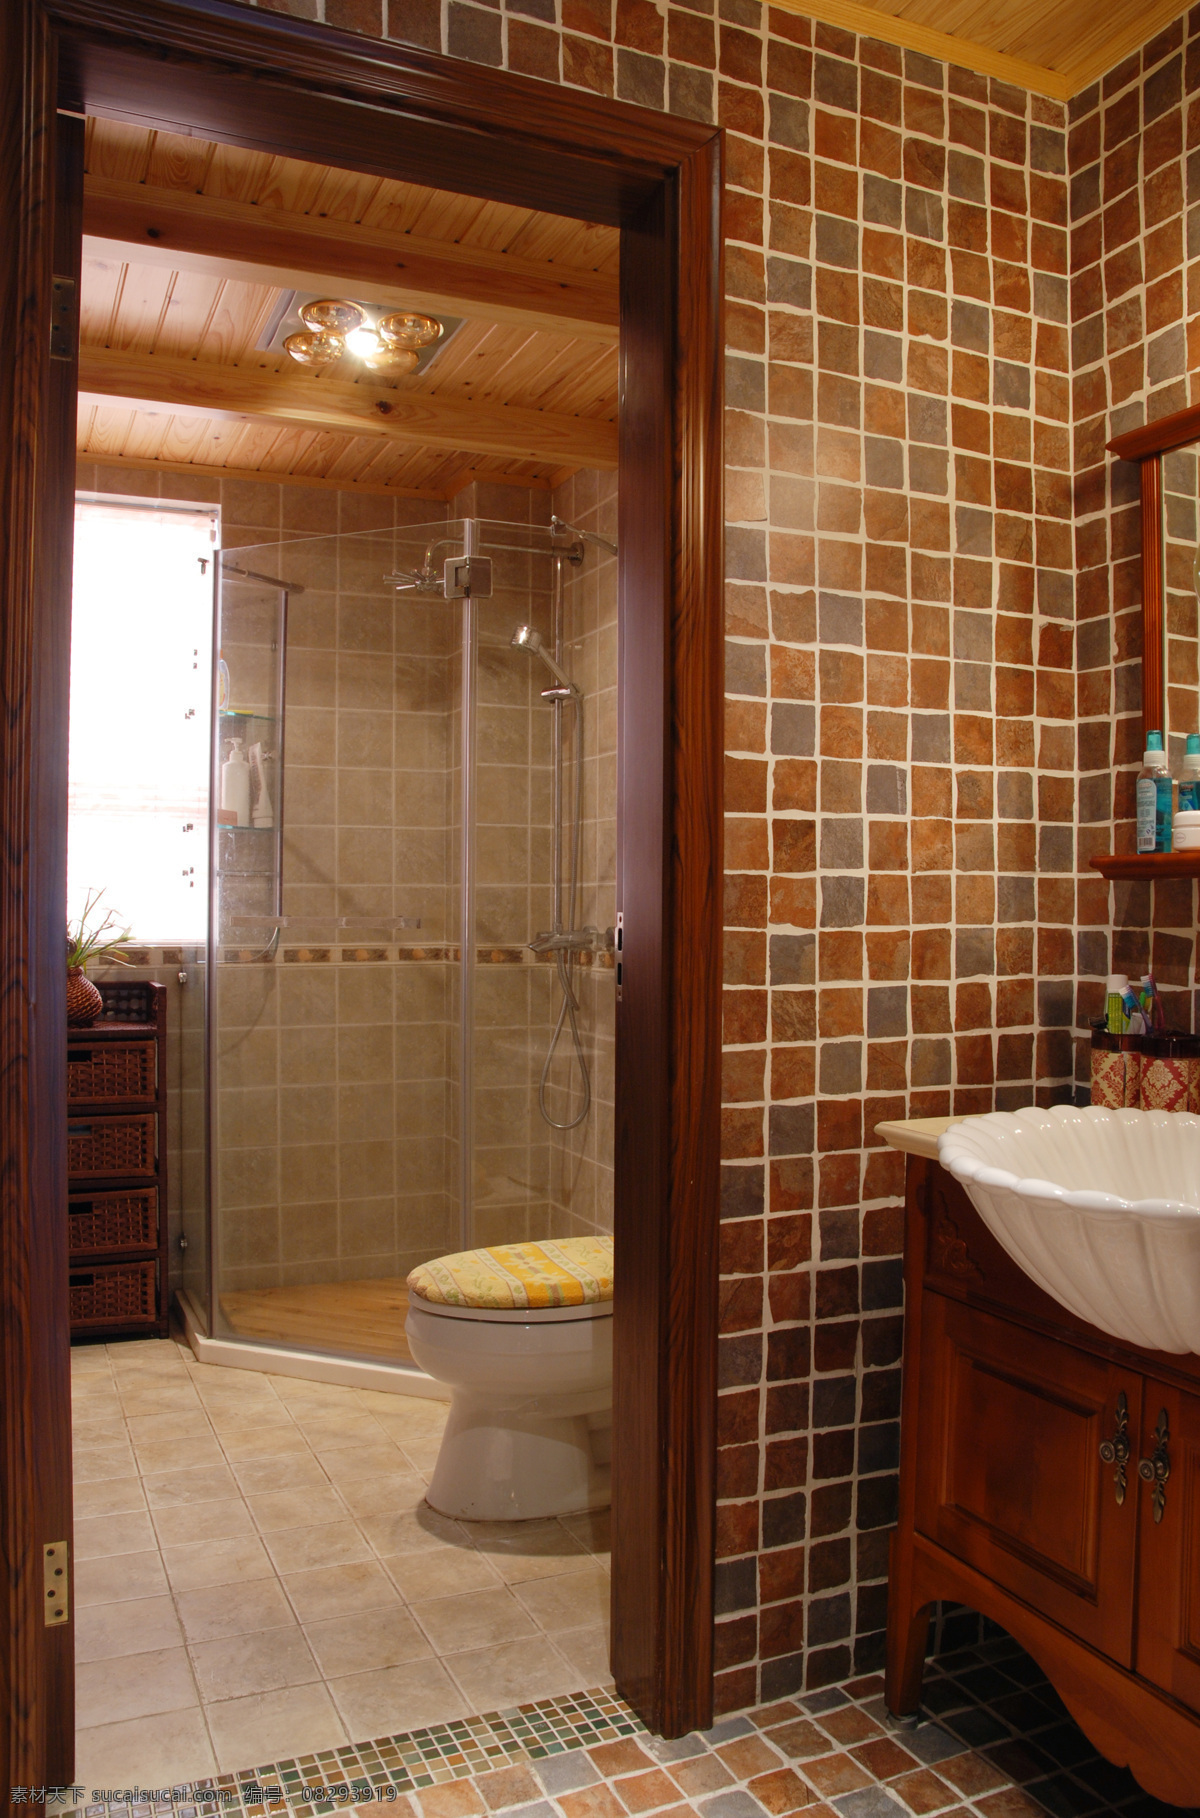 中式 古典 风 室内设计 浴室 瓷砖 效果图 浴缸 马桶 格子 现代 简约 家装